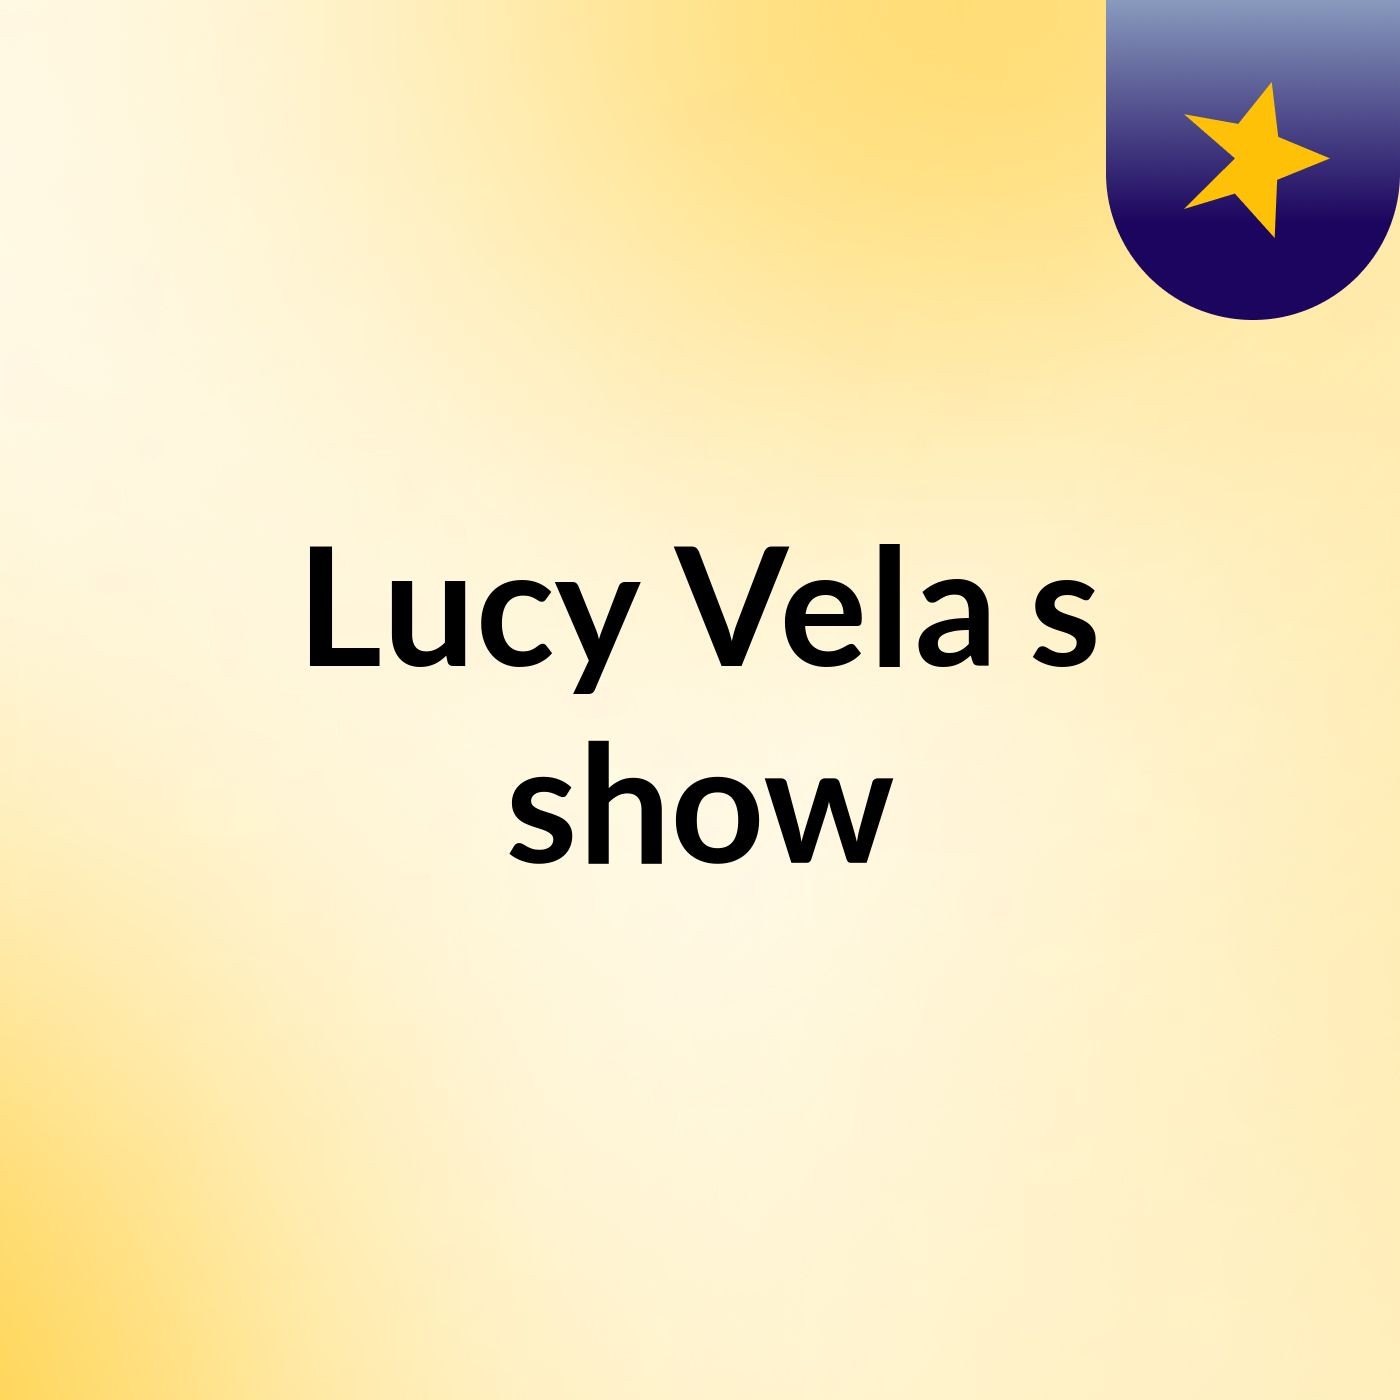 Lucy Vela's show